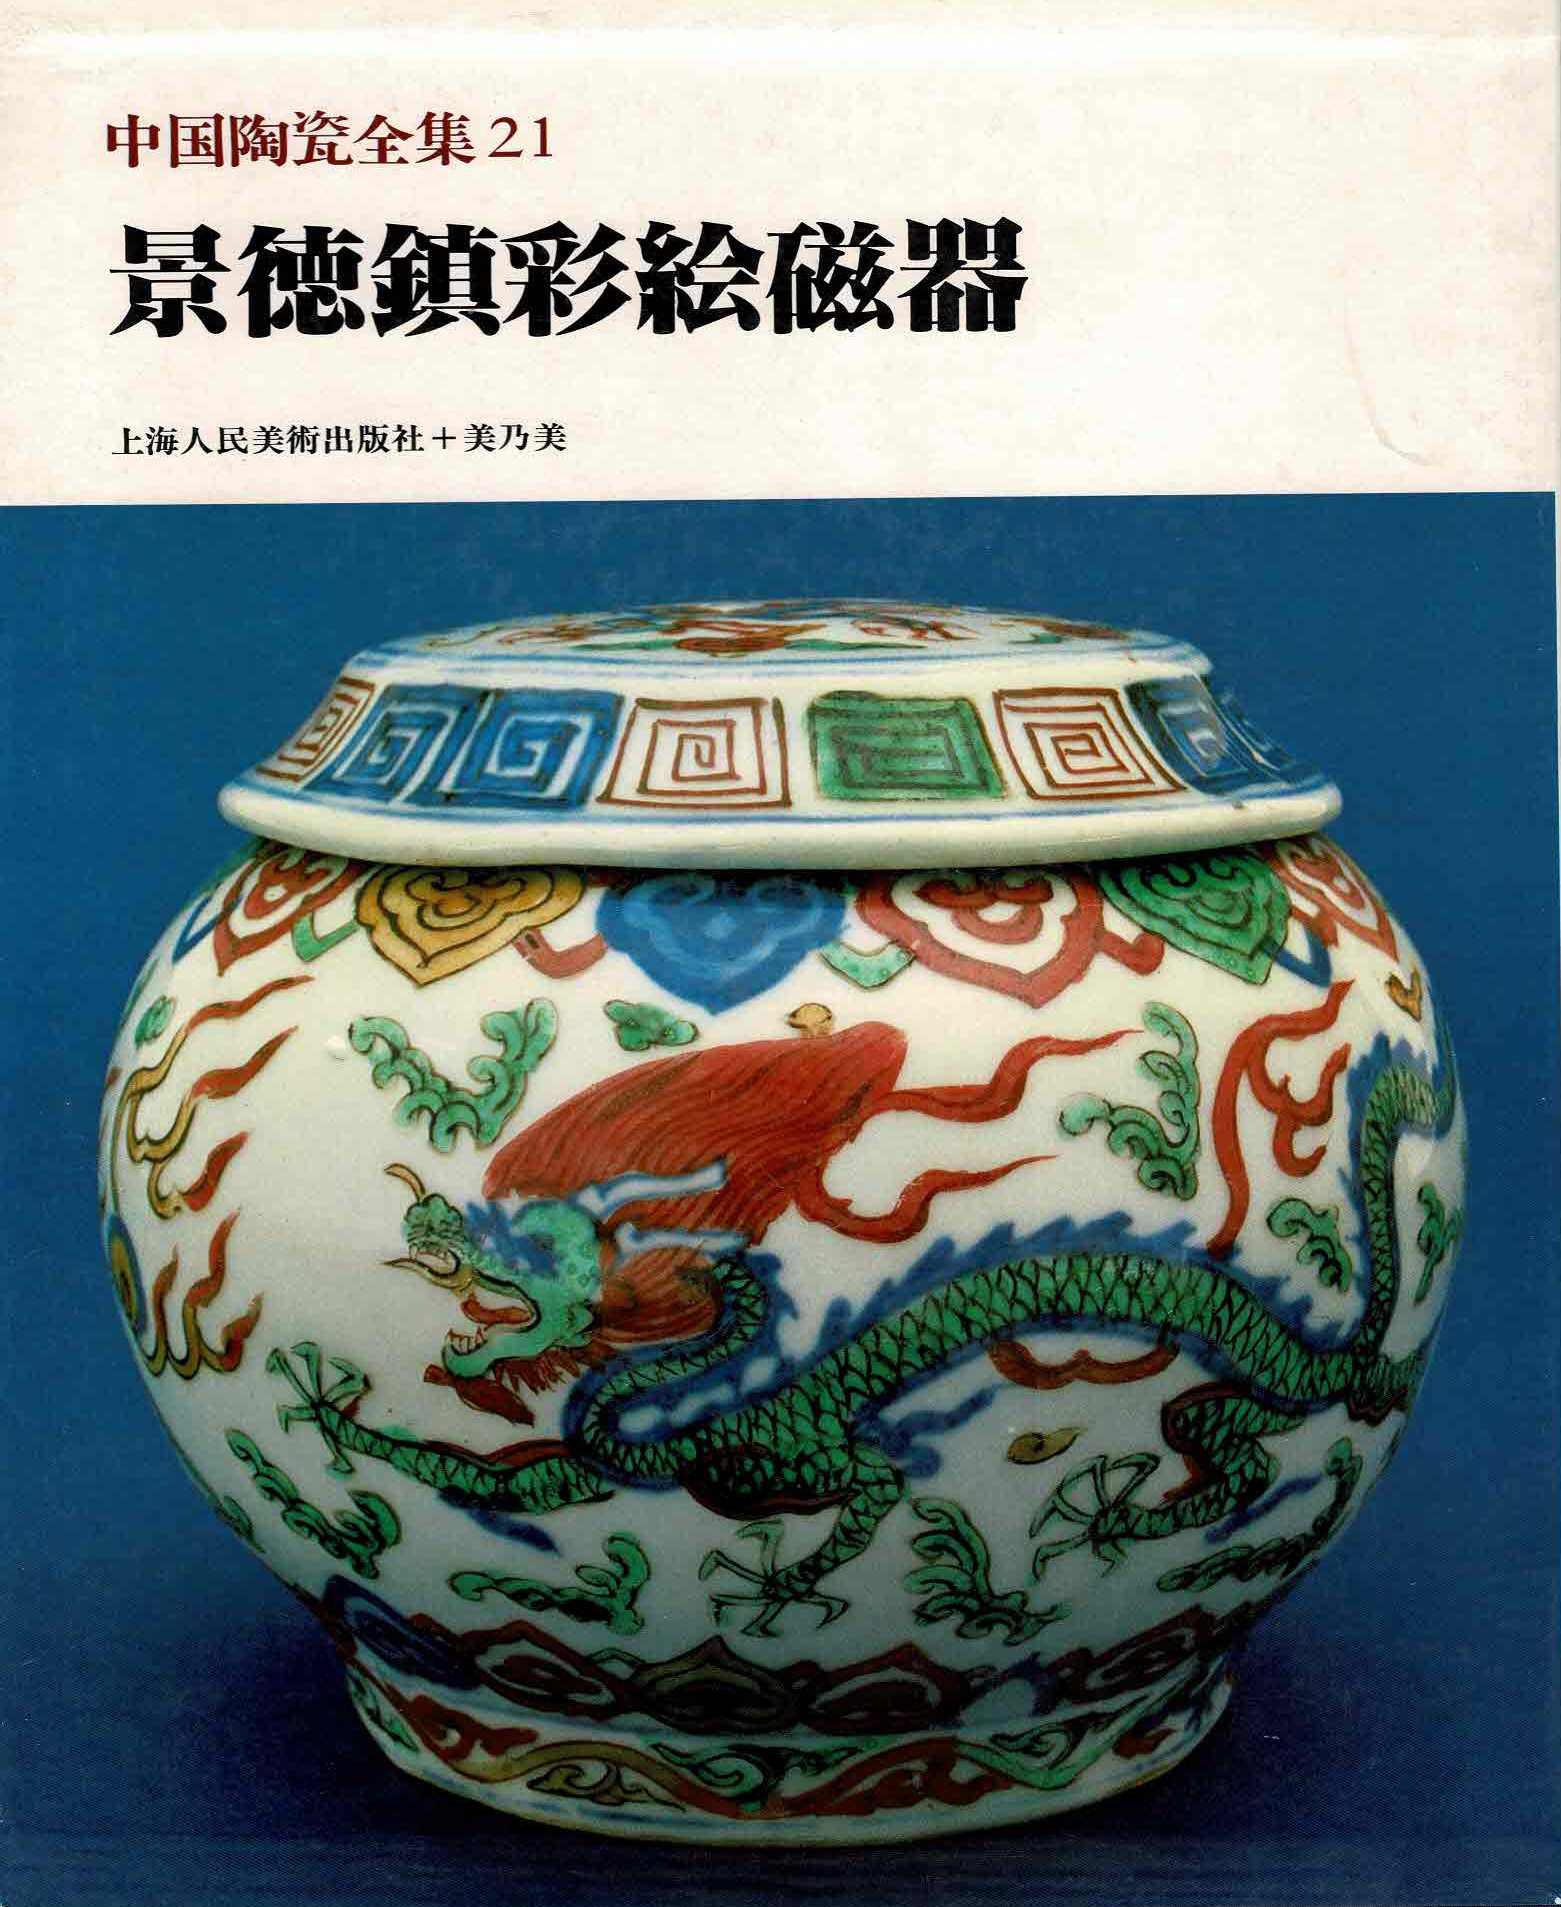 Wang Qingzheng et al - CHUGOKU TOJI ZENSHU 21 - CHINESE CERAMICS IN CHINESE COLLECTIONS 21. Jingdezhen Polychromes